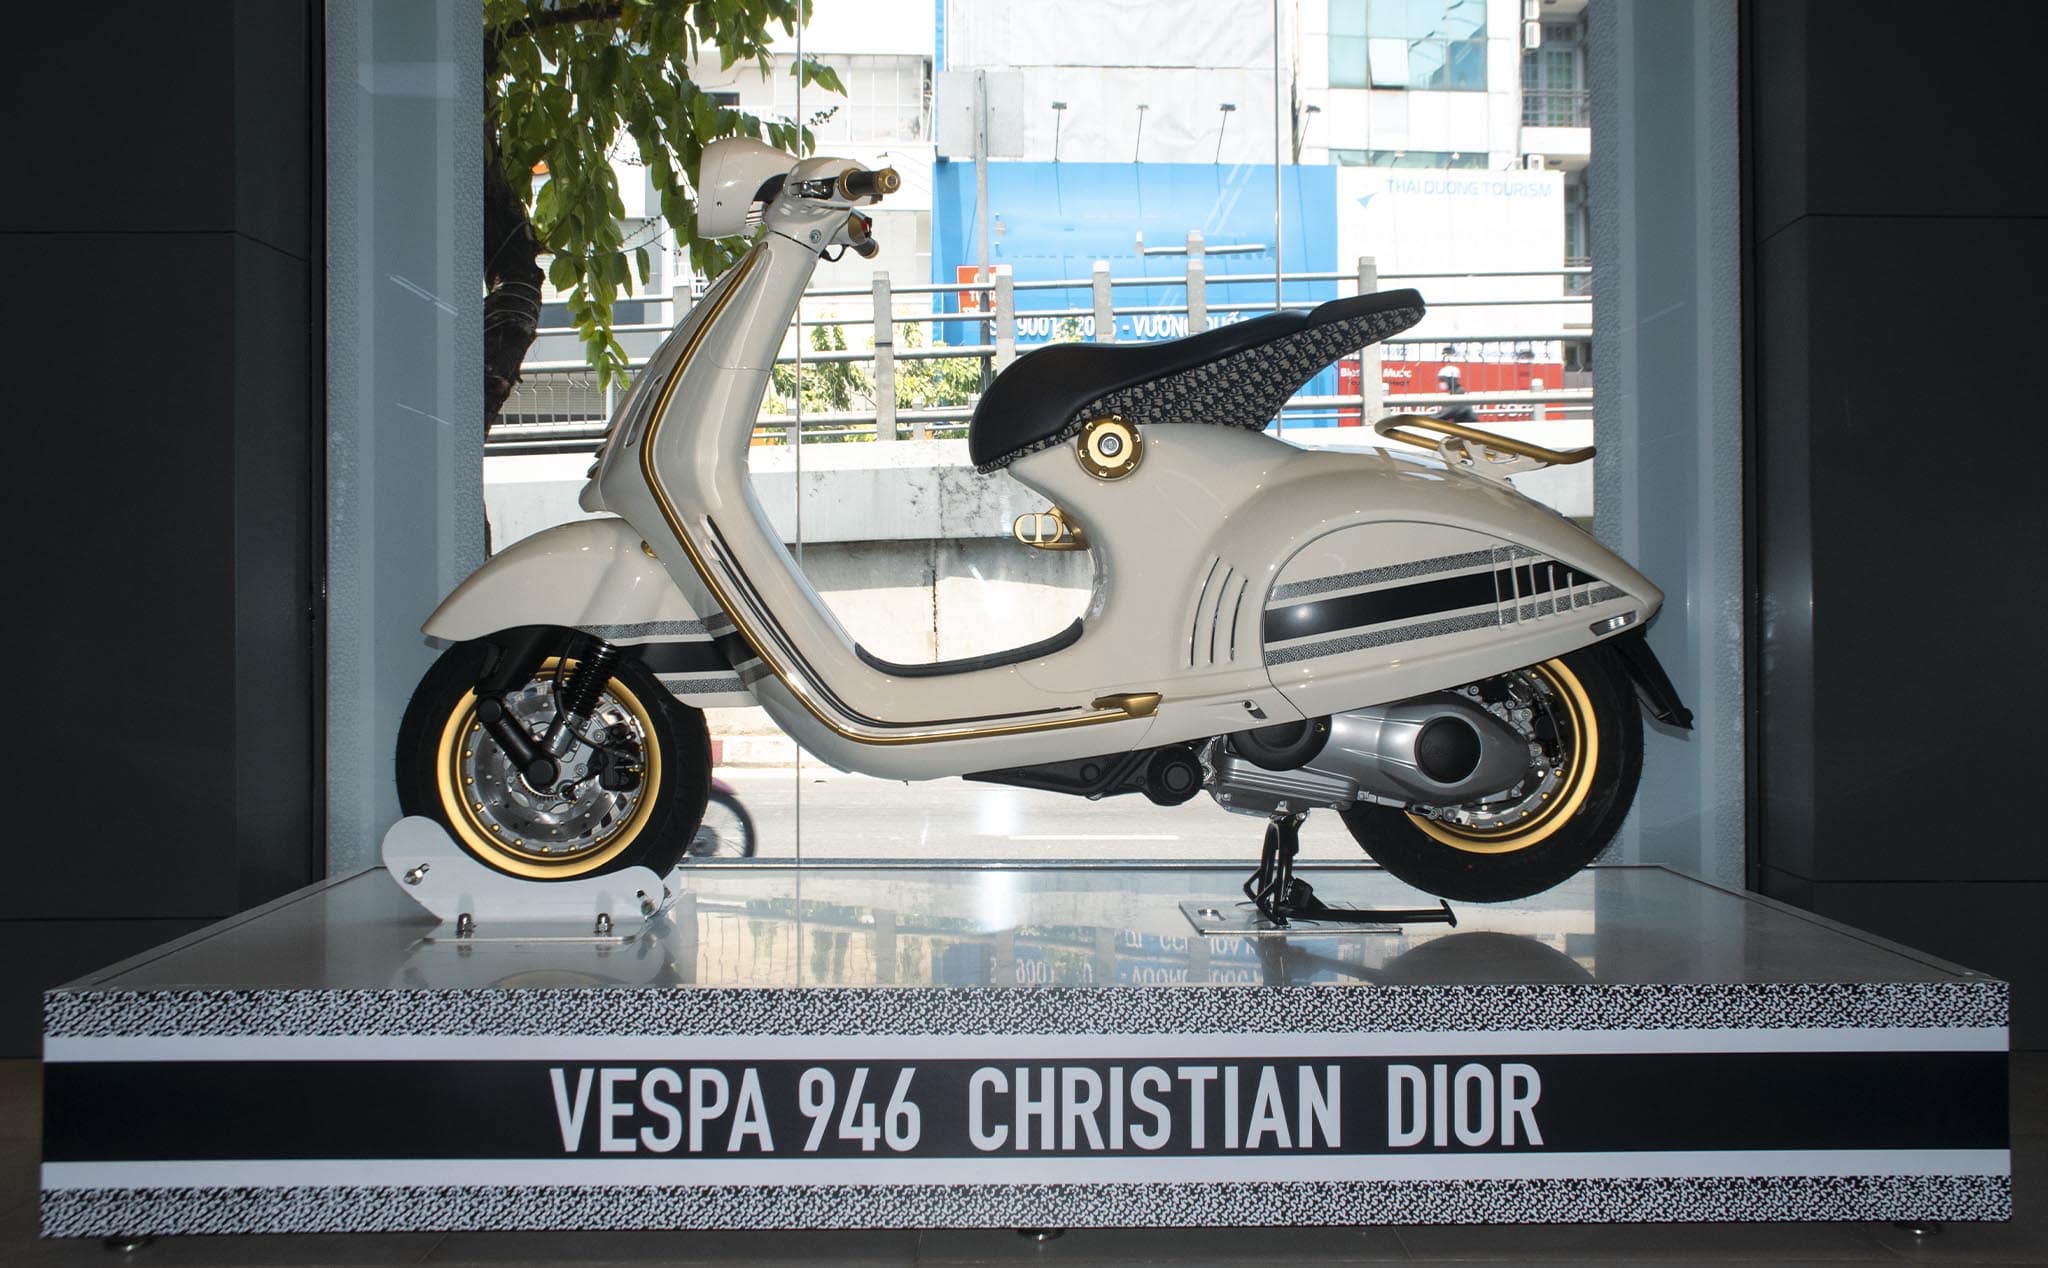 Vespa 946 Christian Dior gây sốt tại Việt Nam sang tay lãi ngay 1 tỉ đồng   Tuổi Trẻ Online